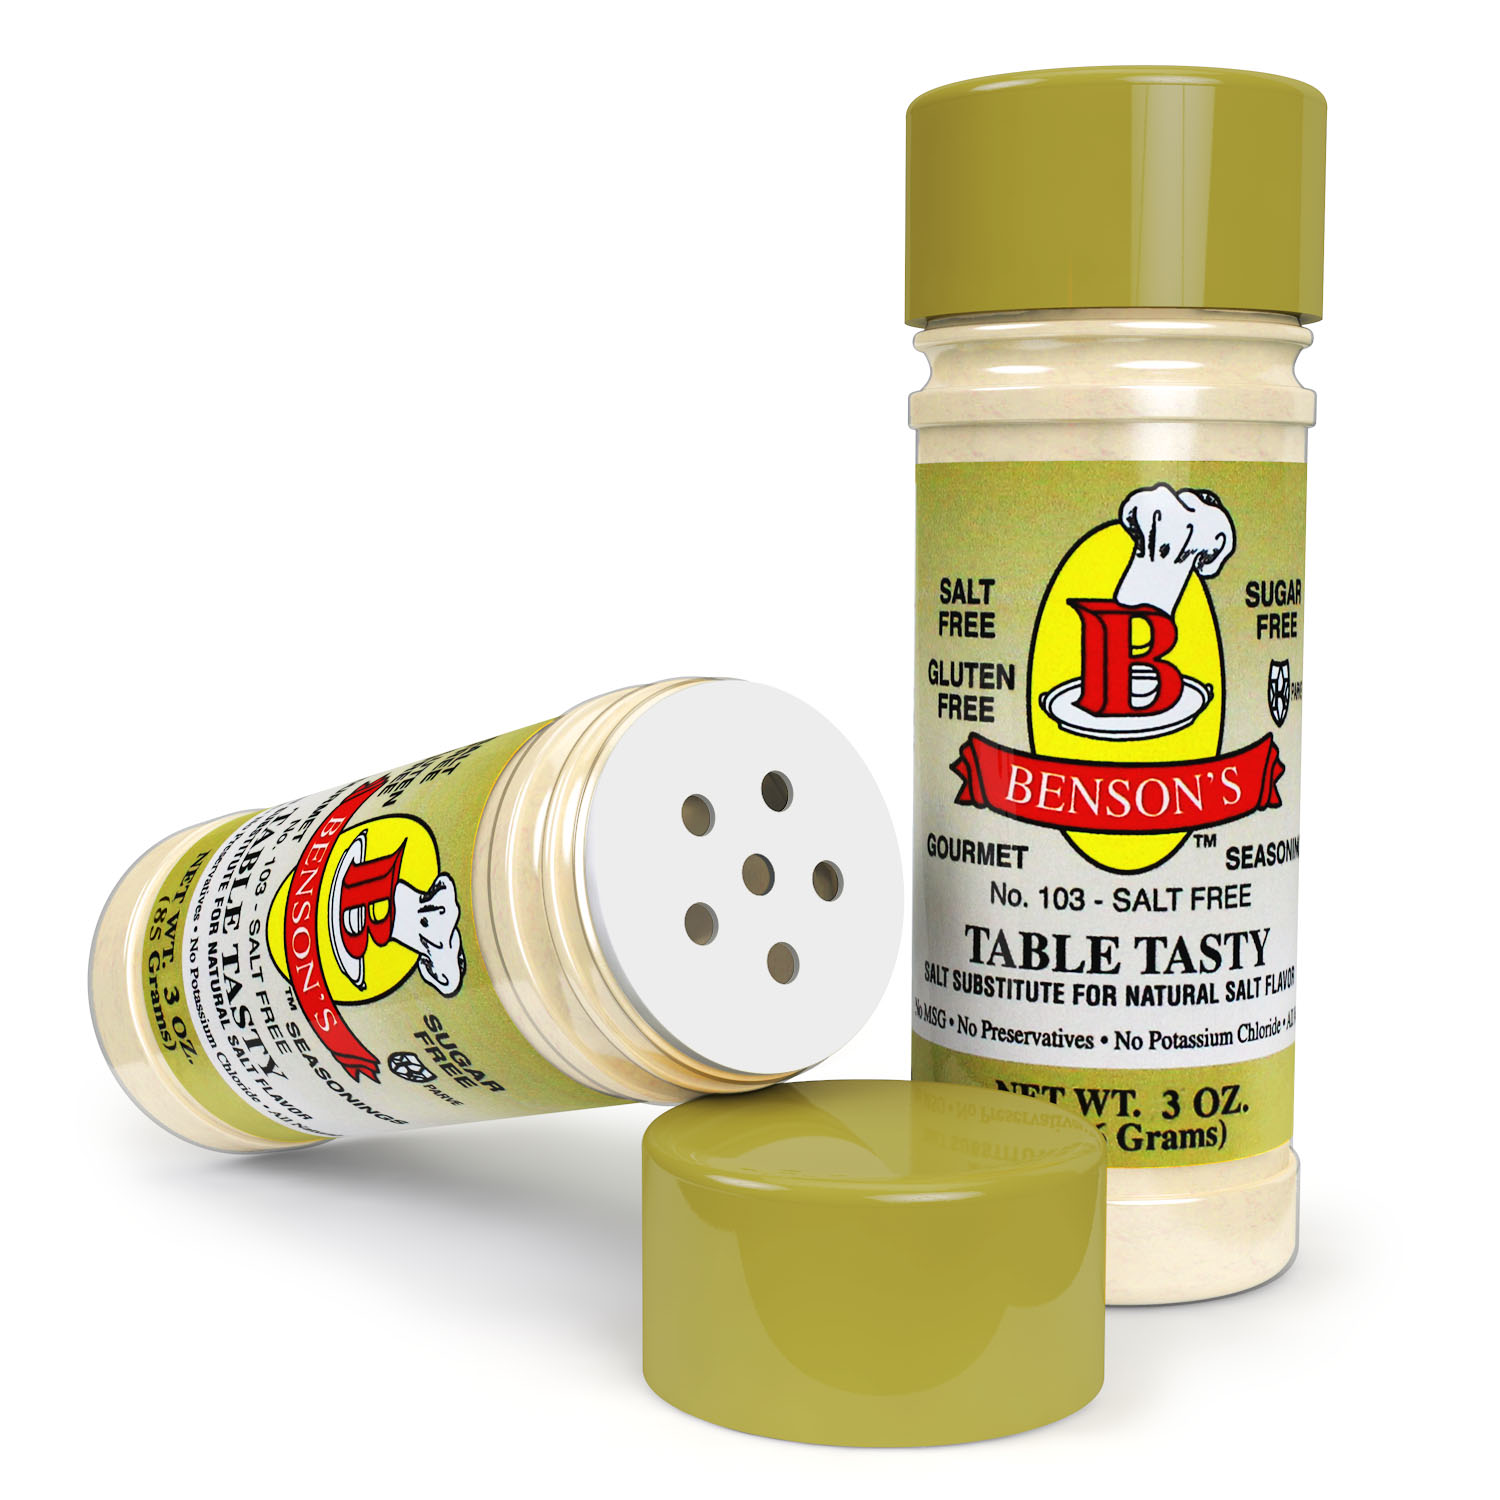 Table Tasty Original Salt Substitute 3 Pack (3 bottles of Table Tasty) -  Benson's Gourmet Seasonings